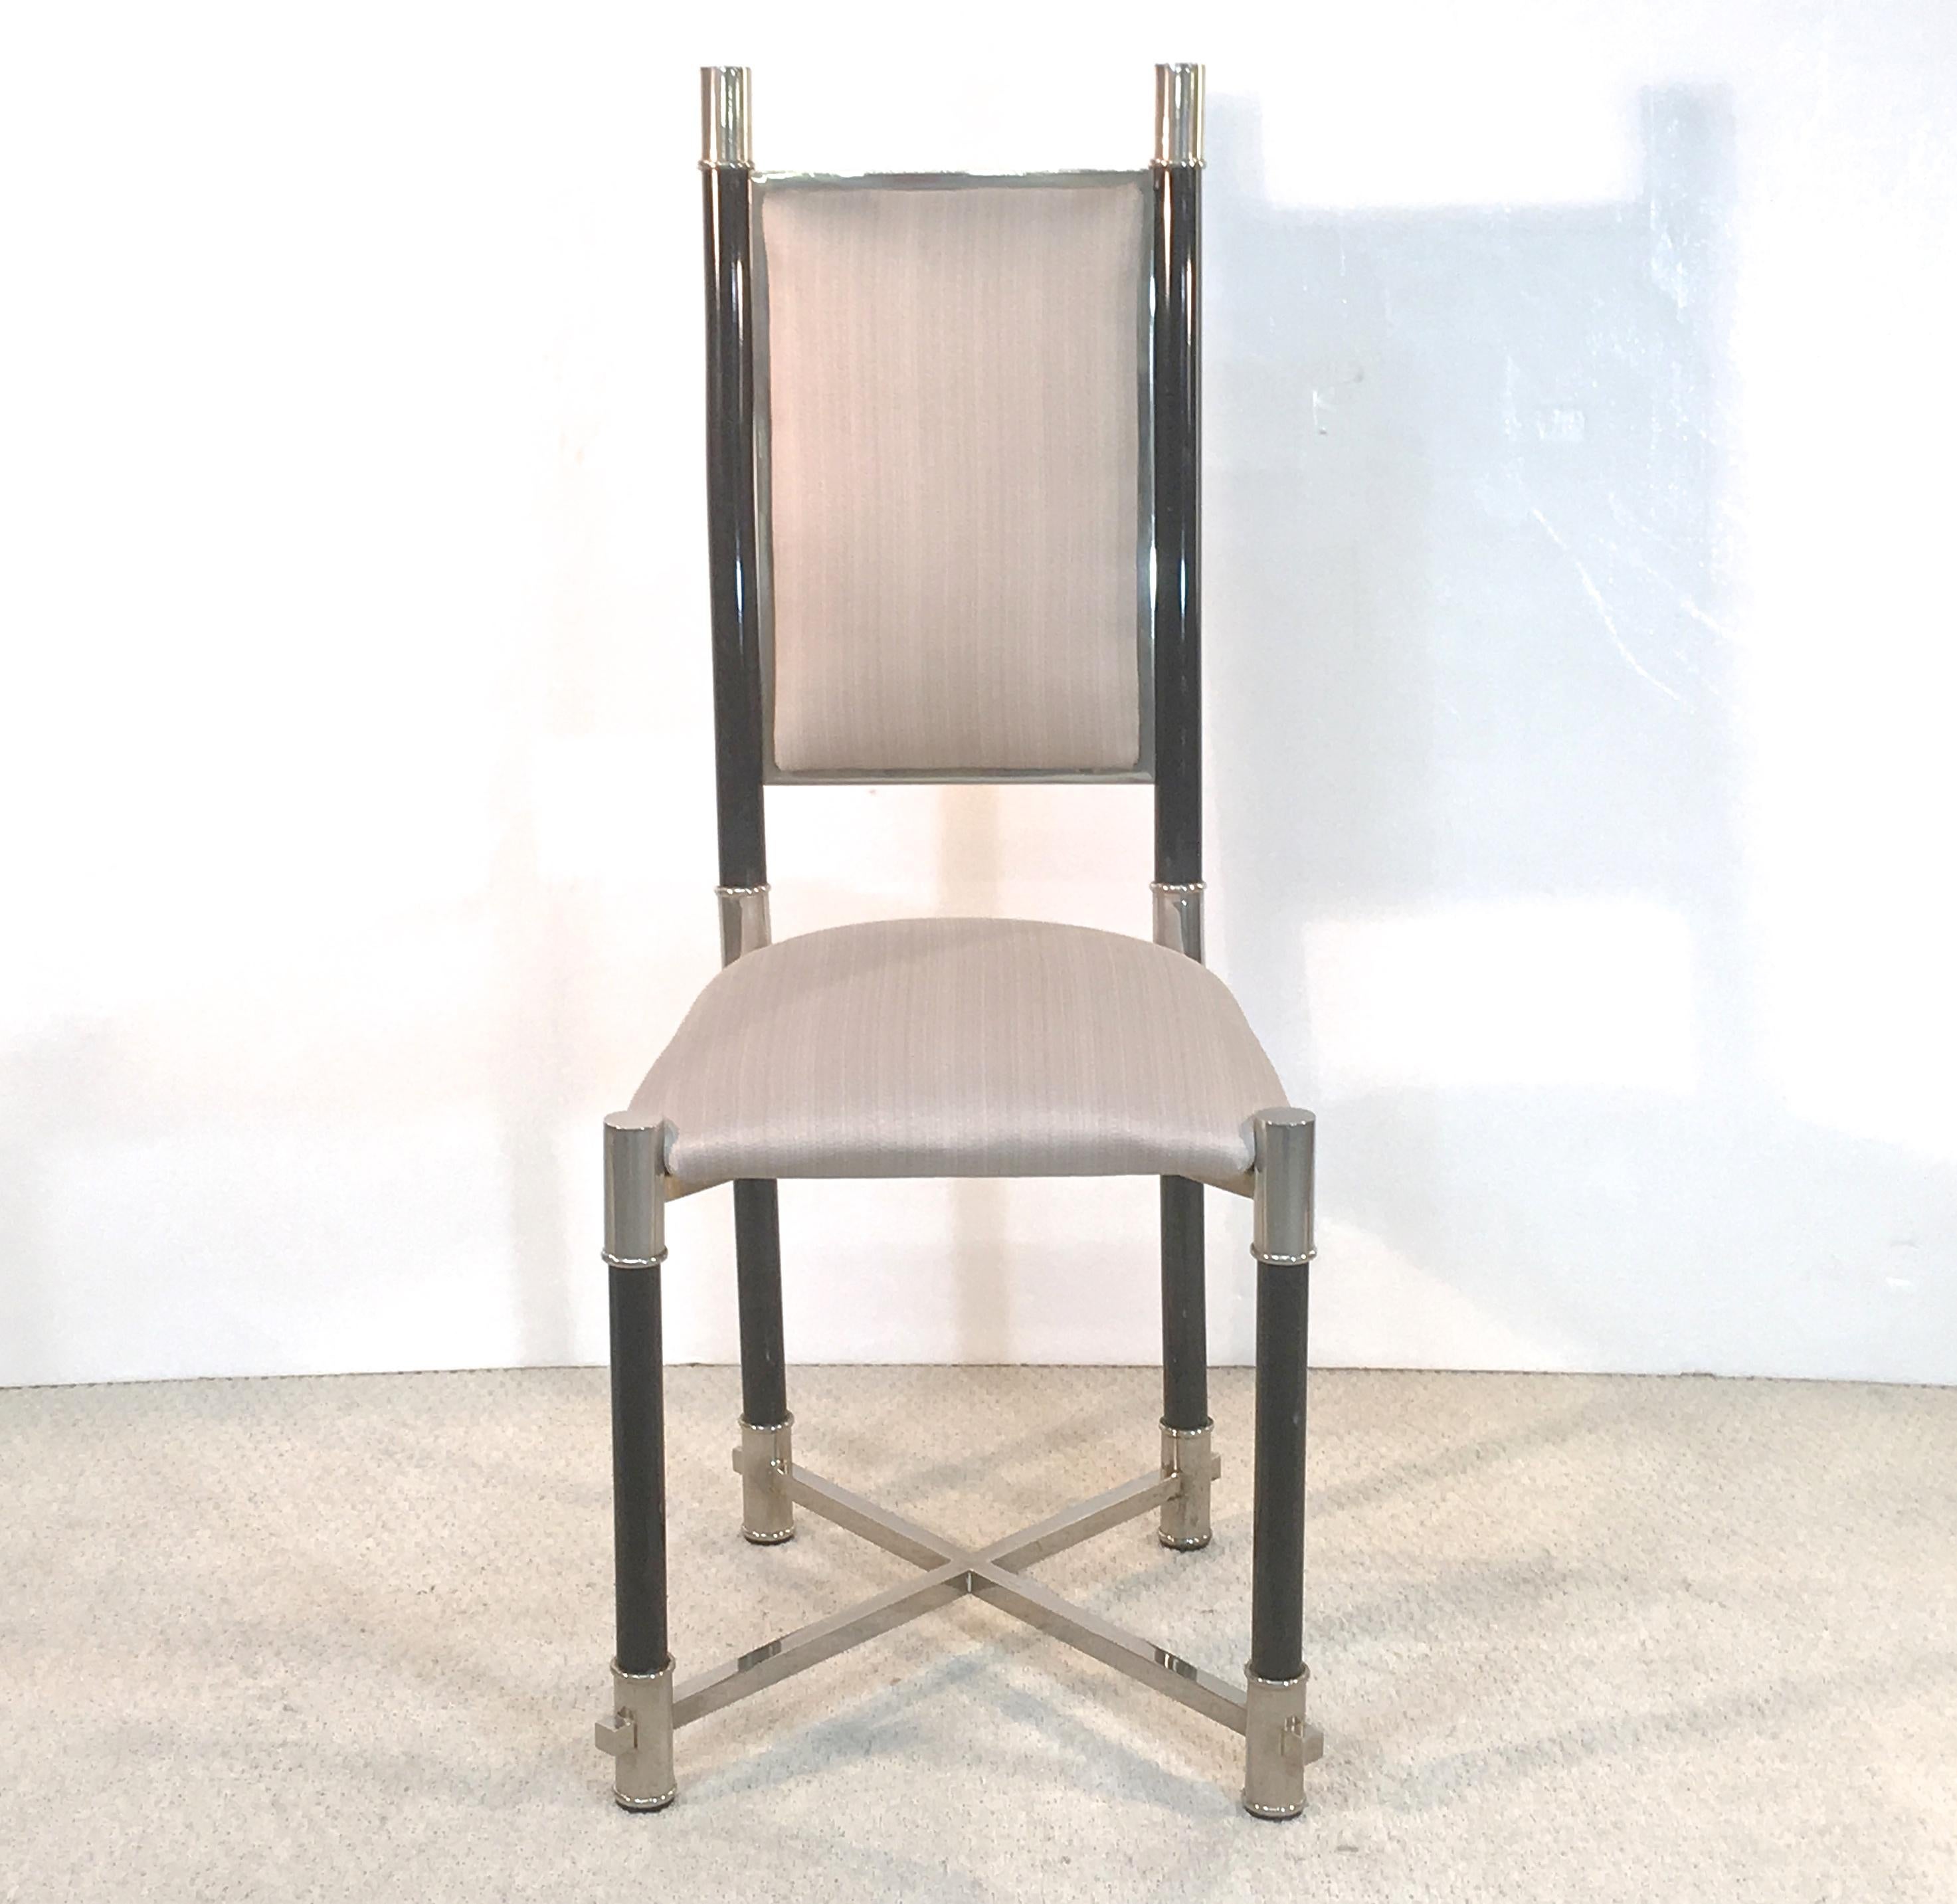 Satz von acht Hochlehner-Esszimmerstühlen von Antonio's aus Italien, ca. 1970er Jahre. Vernickeltes Messing und schwarz lackiertes Rundholz. Jeder Stuhl ist auf dem hinteren rechten Bein oberhalb des Sabotts mit 